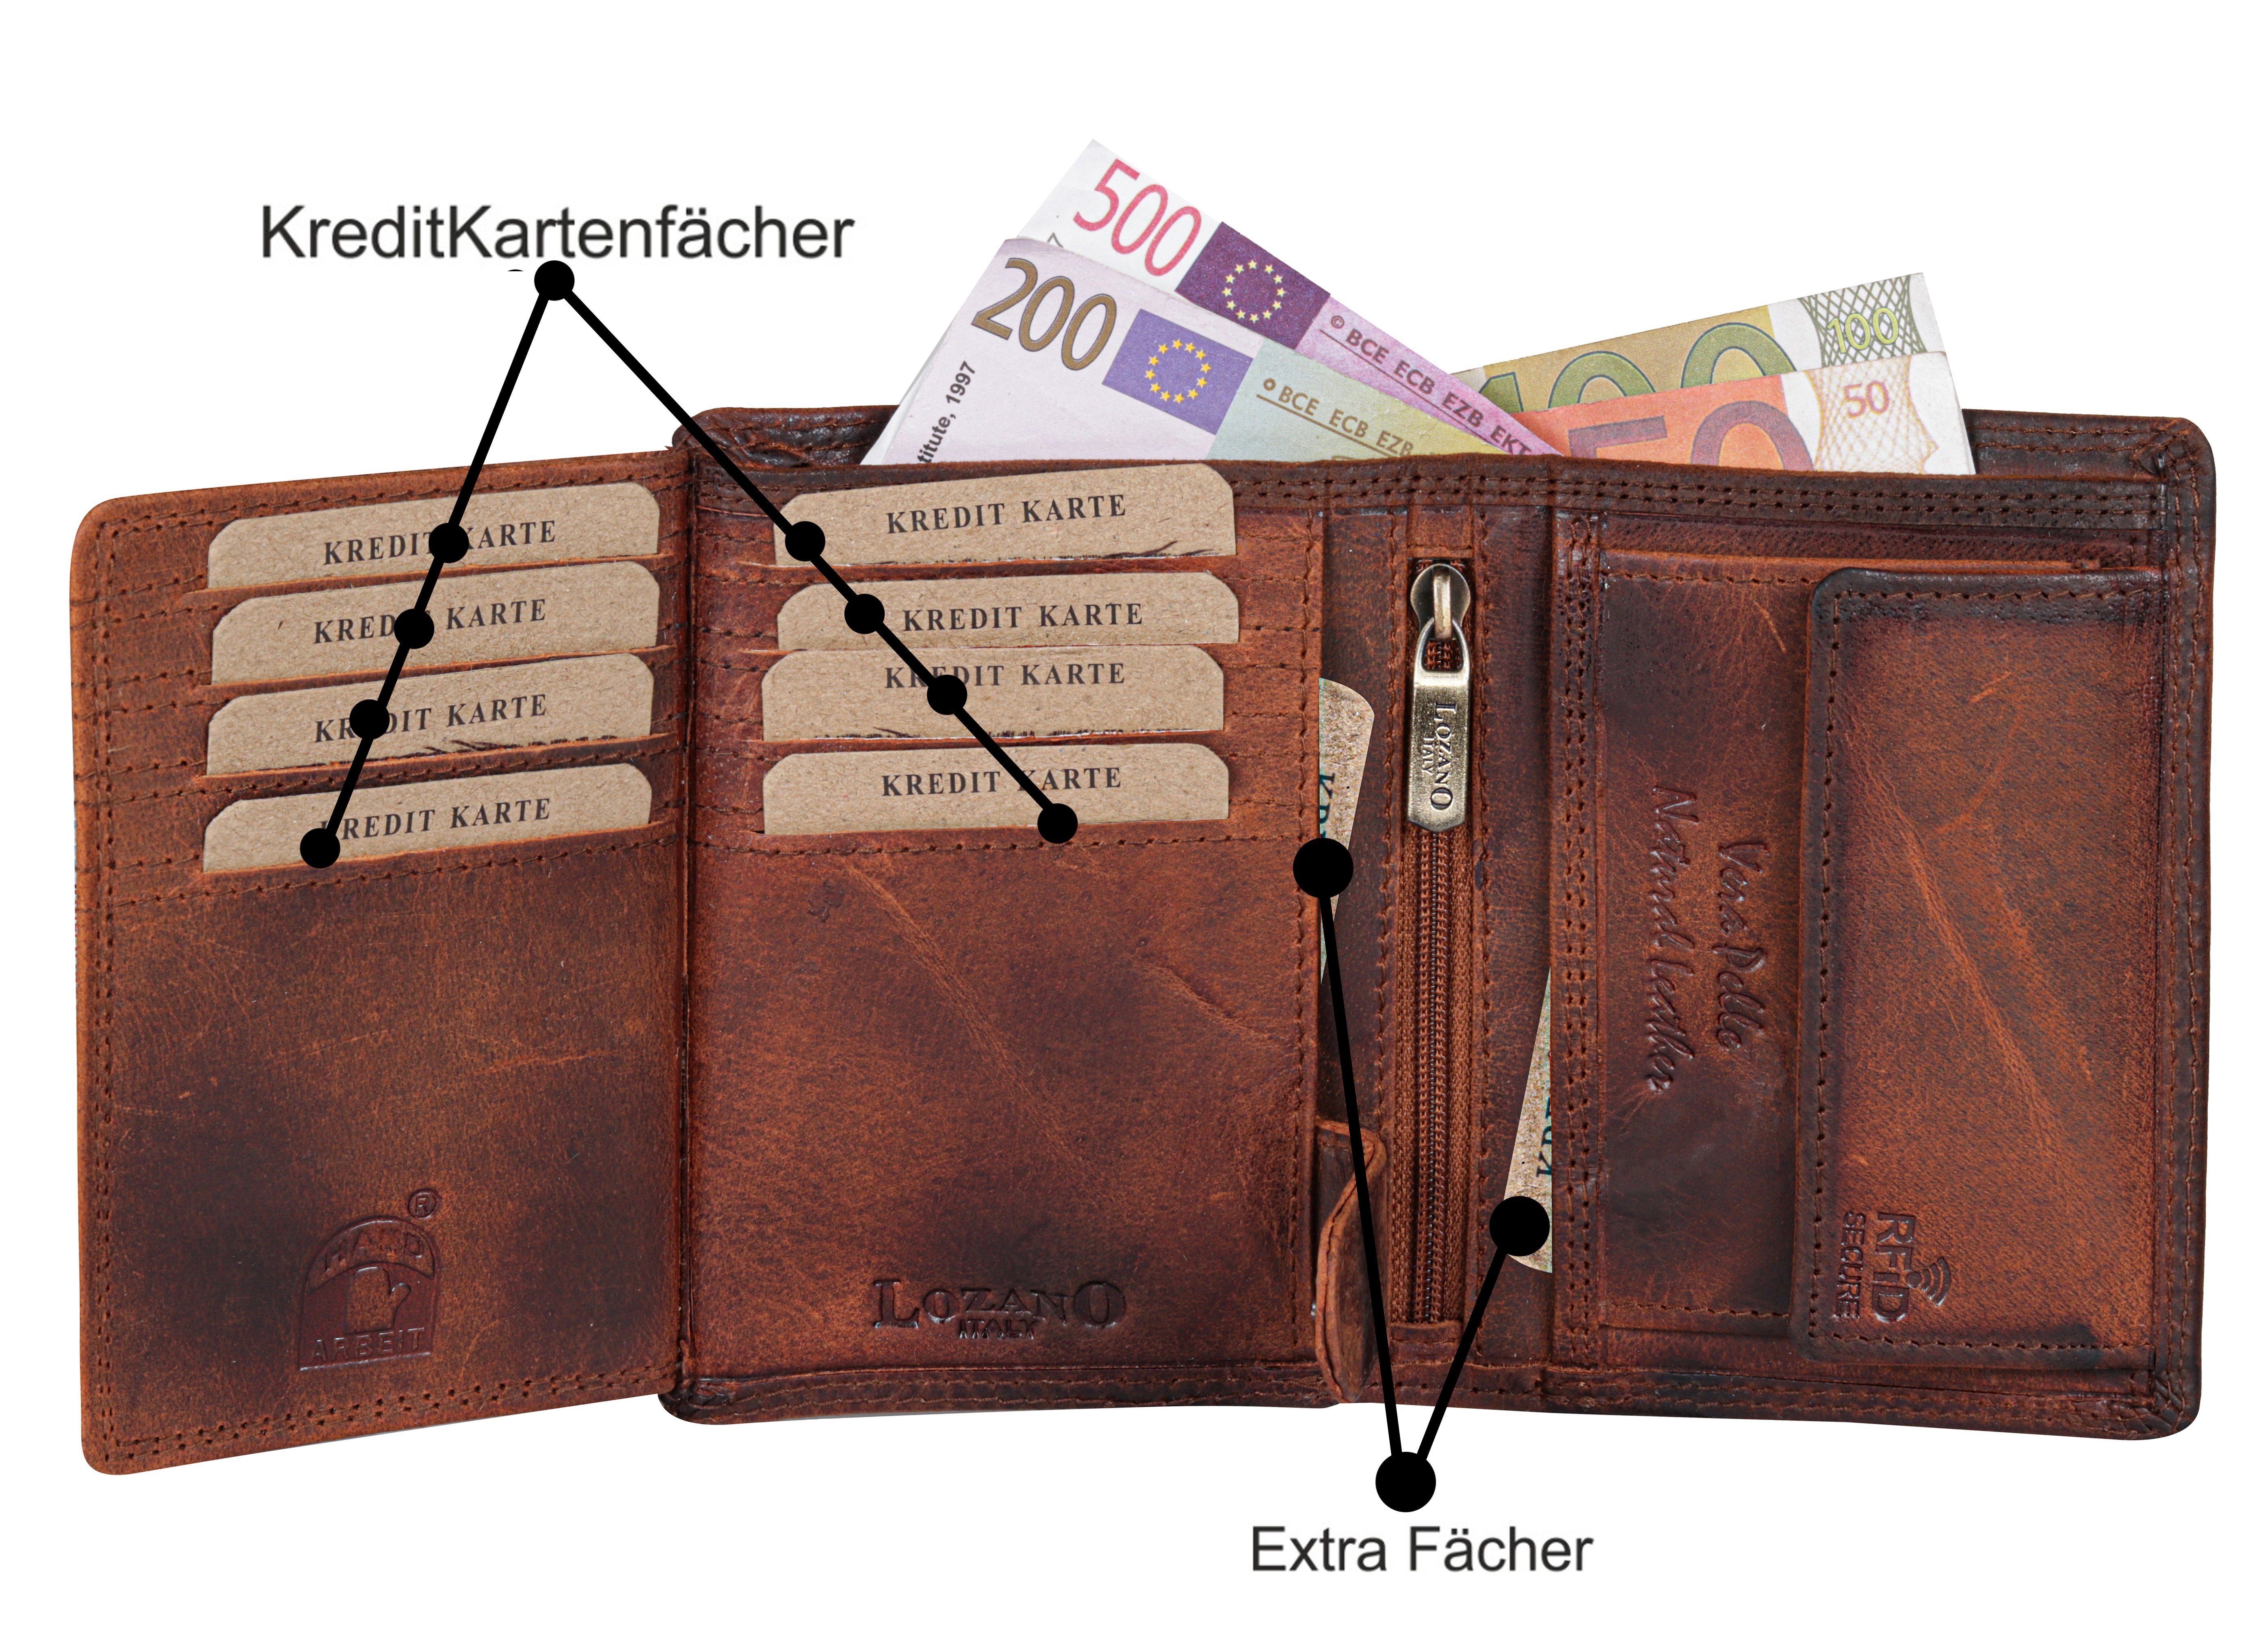 SHG Geldbörse Herren Leder Büffelleder mit Lederbörse Schutz Börse RFID Portemonnaie, Männerbörse Brieftasche Münzfach